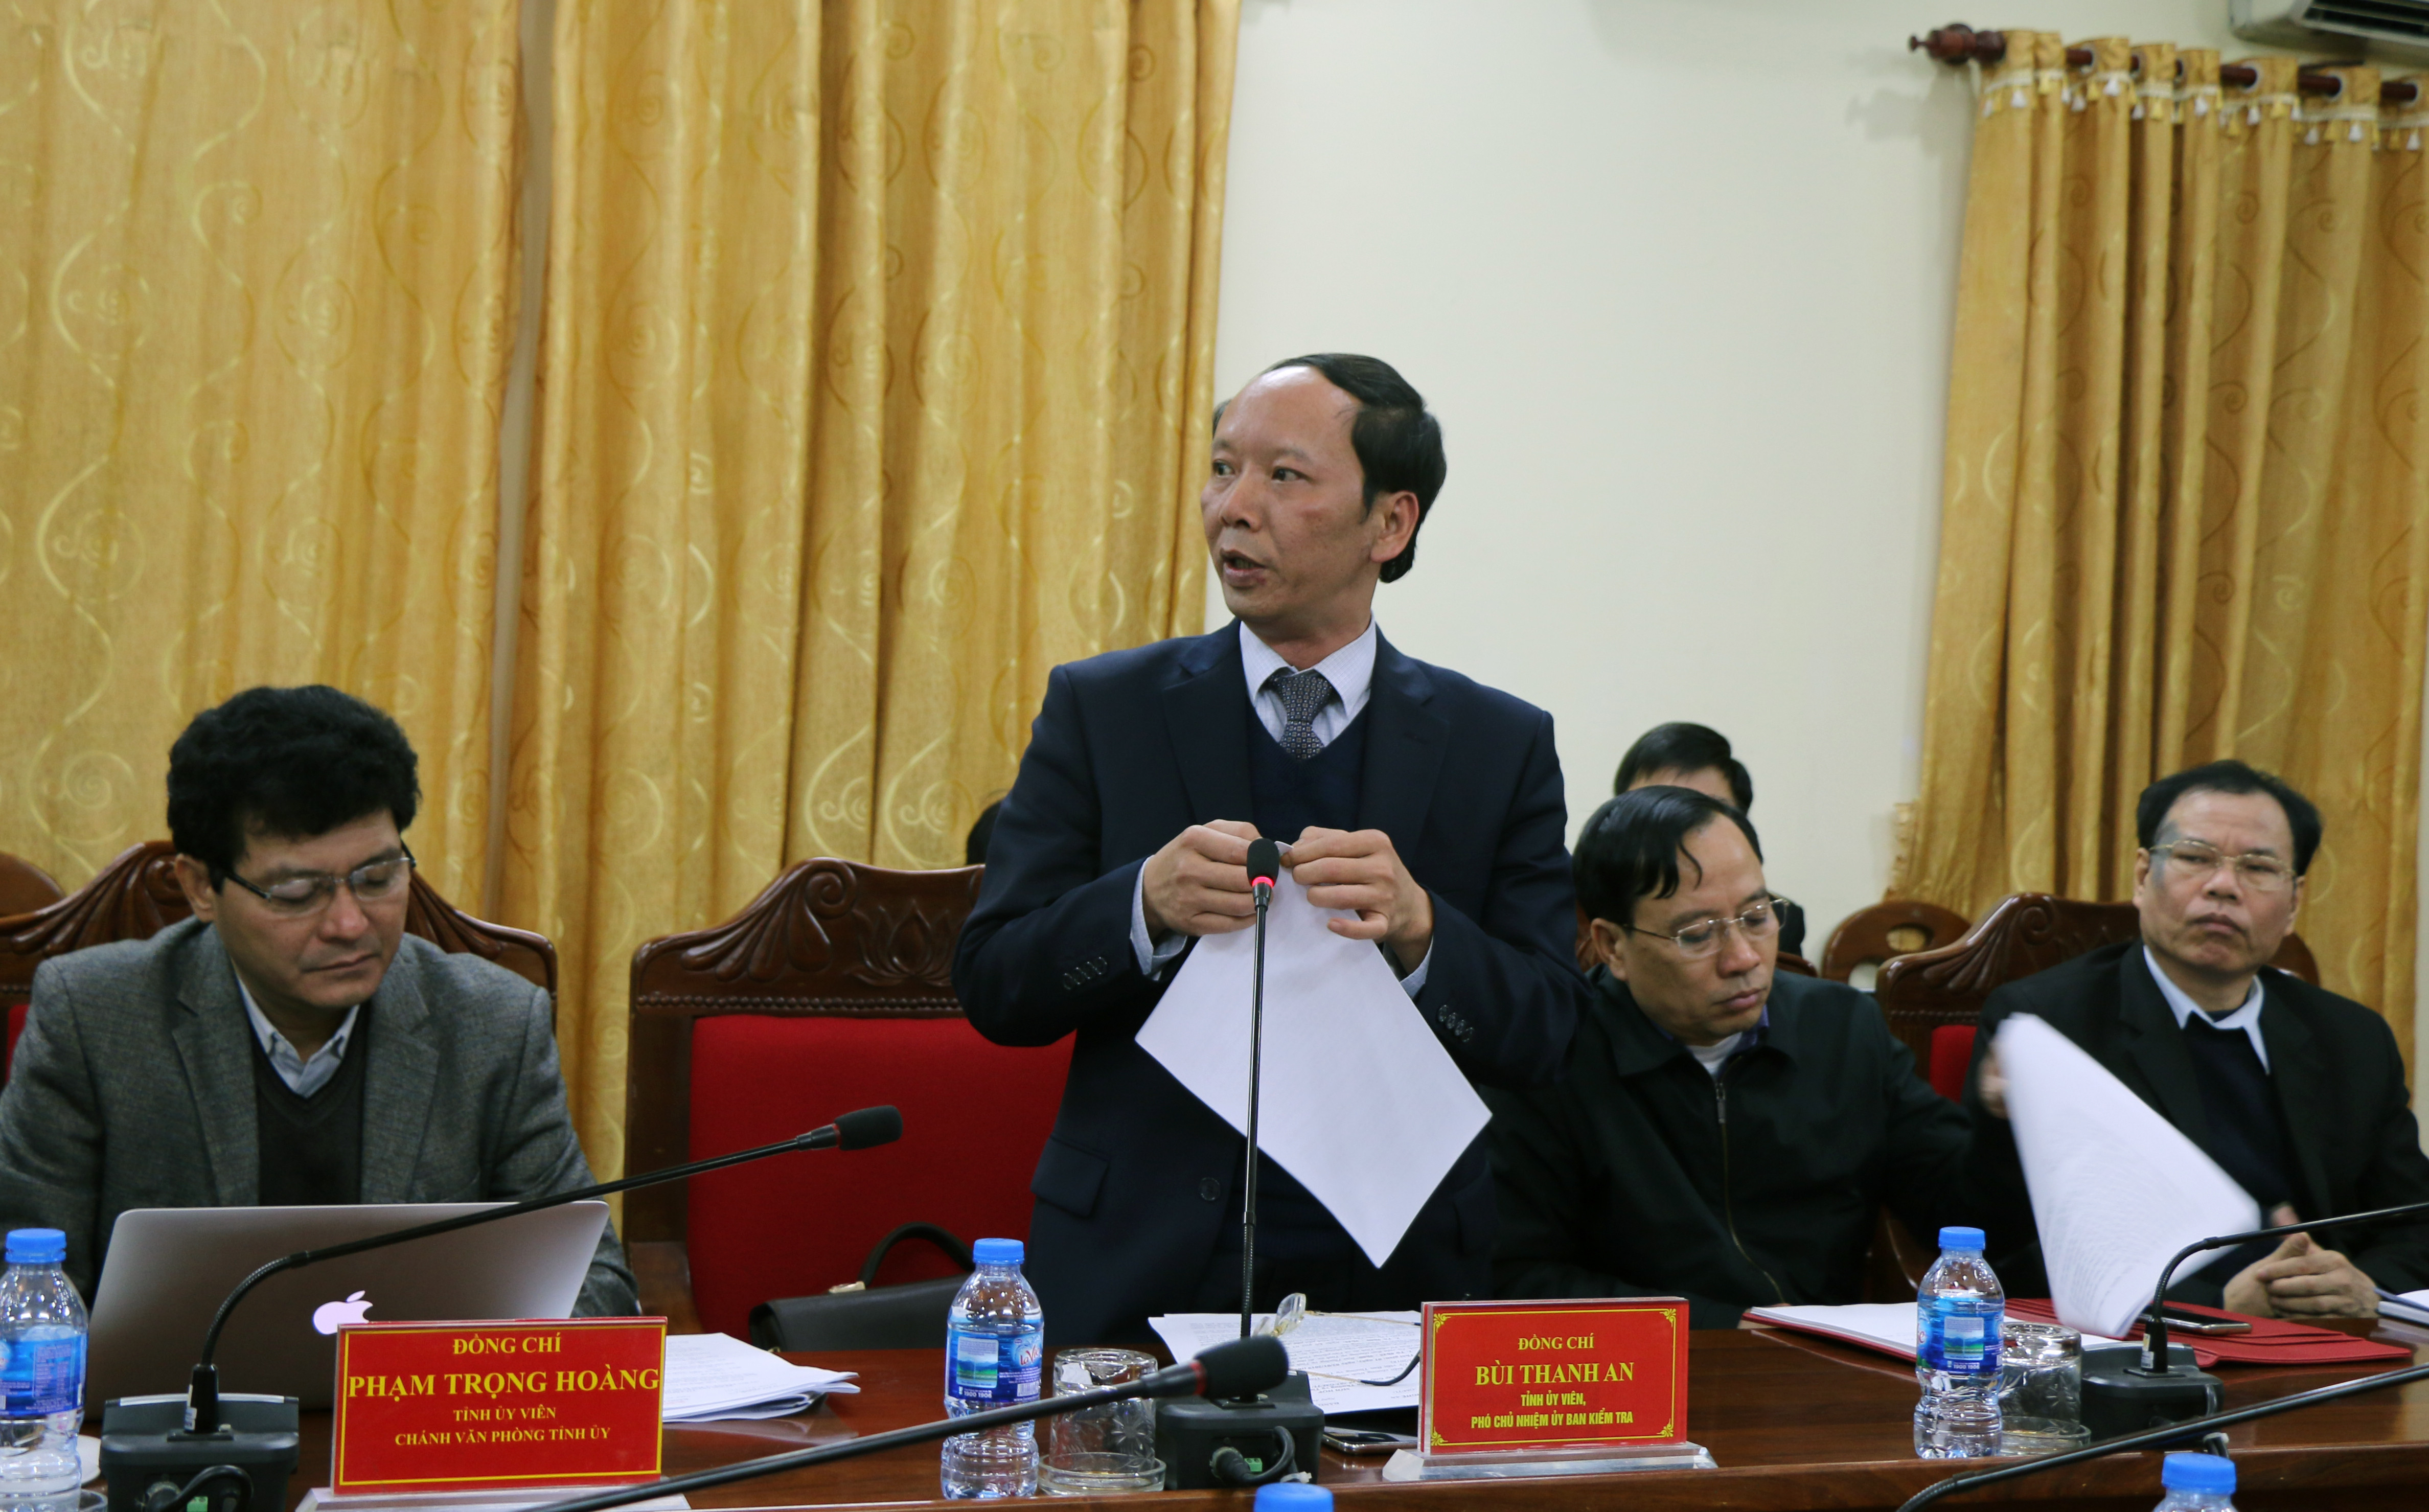 Đồng chí Bùi Thanh An -Ủy viên BTV-Phó Chủ nhiệm Thường trực Ủy Ban Kiểm tra Tỉnh ủy trình bày báo cáo về công tác kiểm tra giám sát